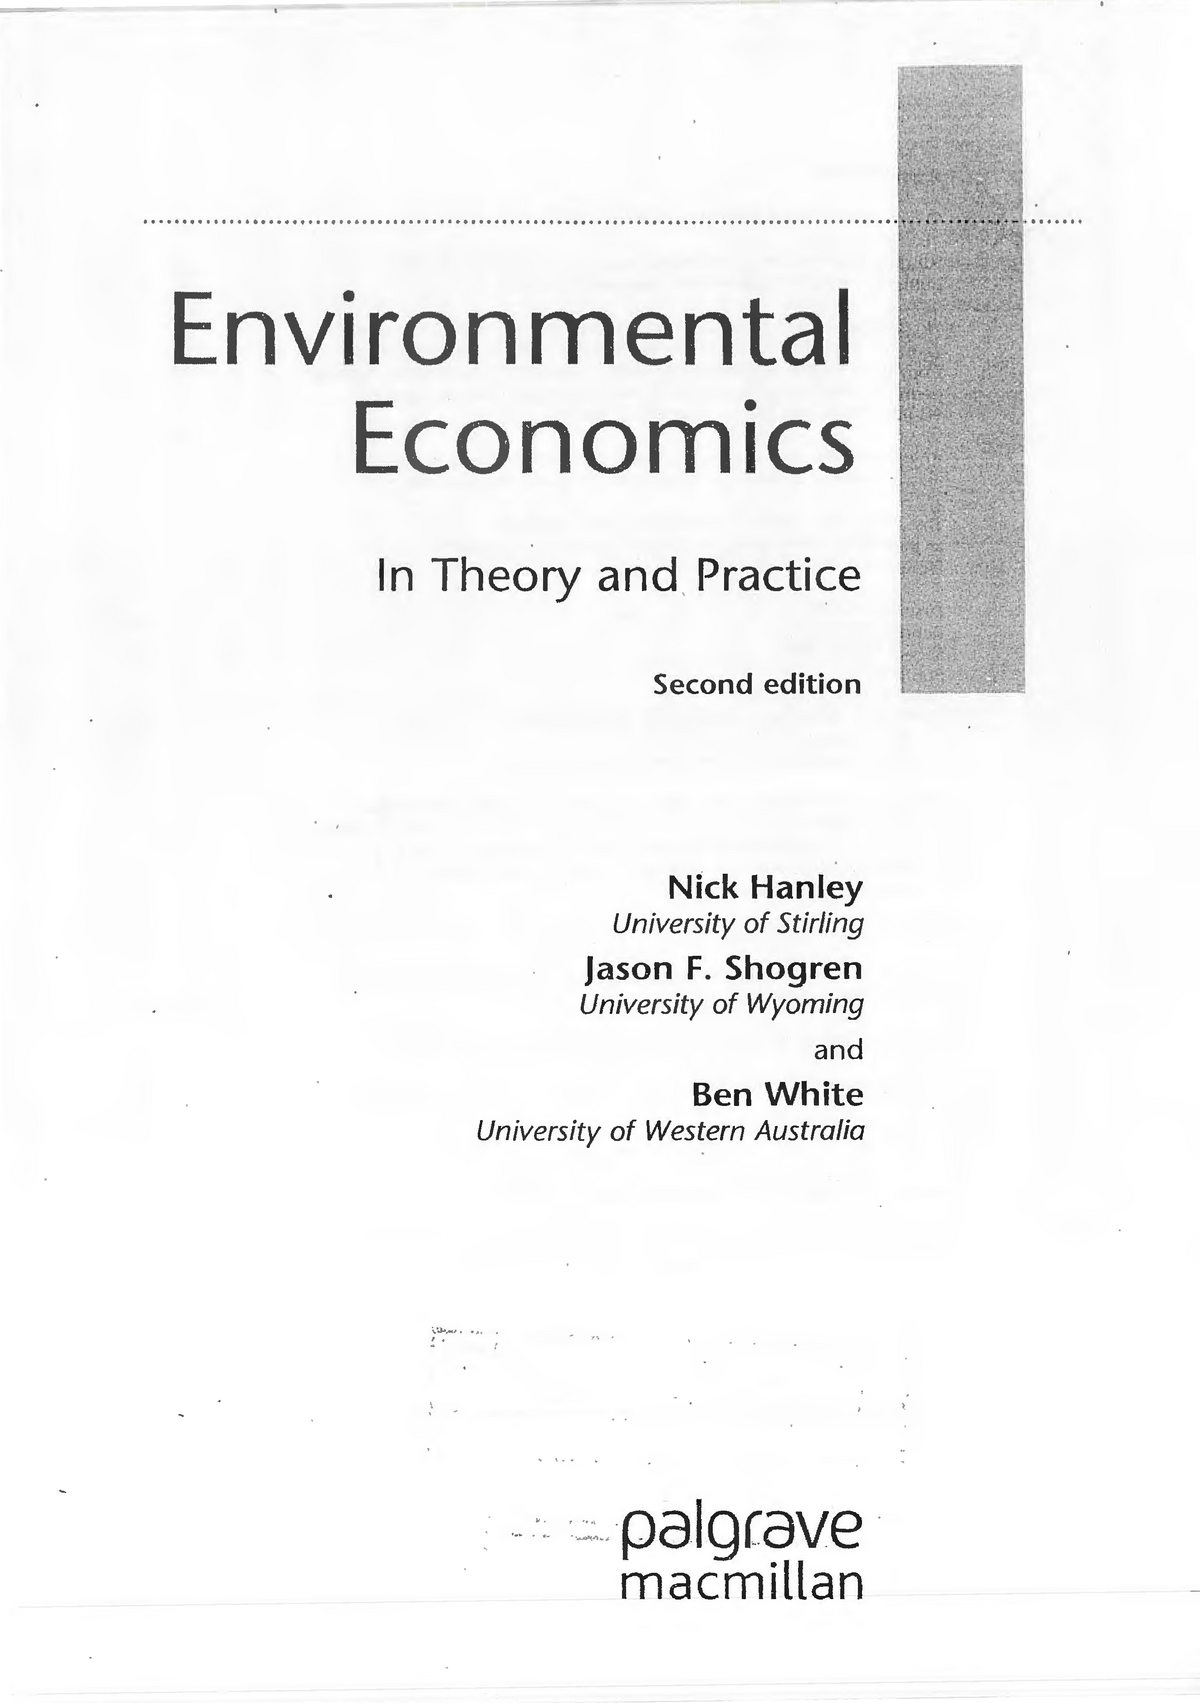 environmental economics assignment topics